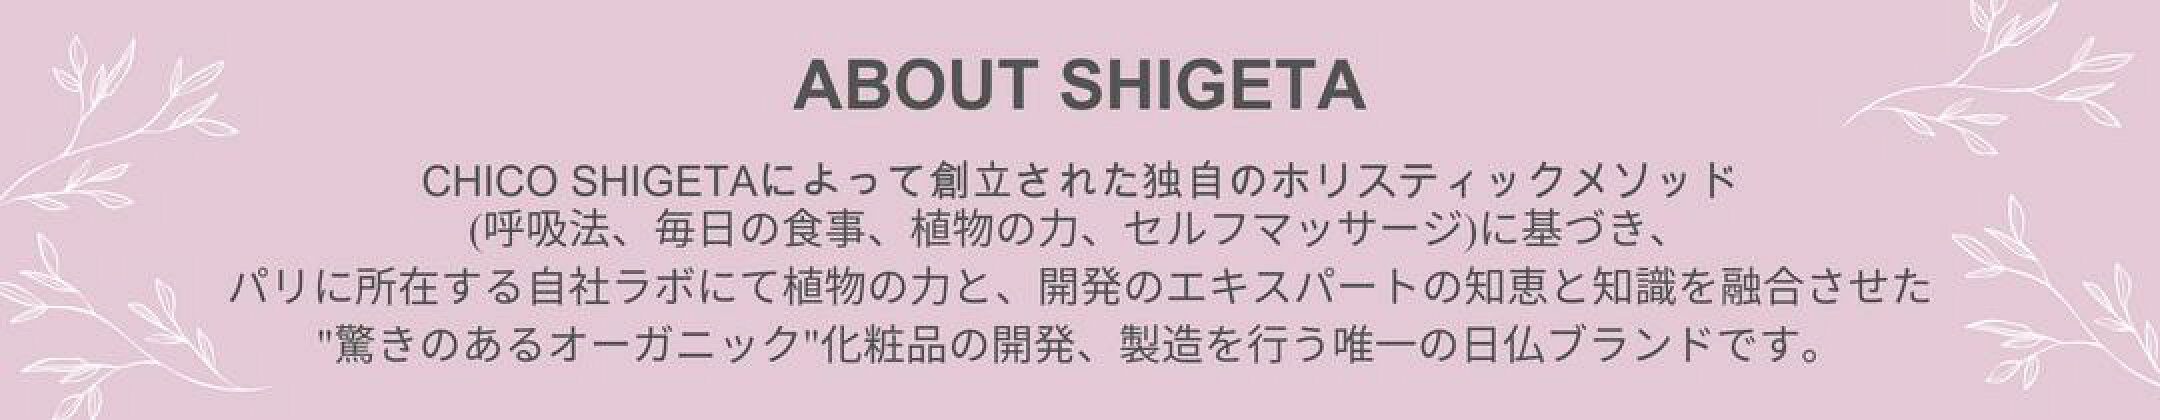 About Shigeta